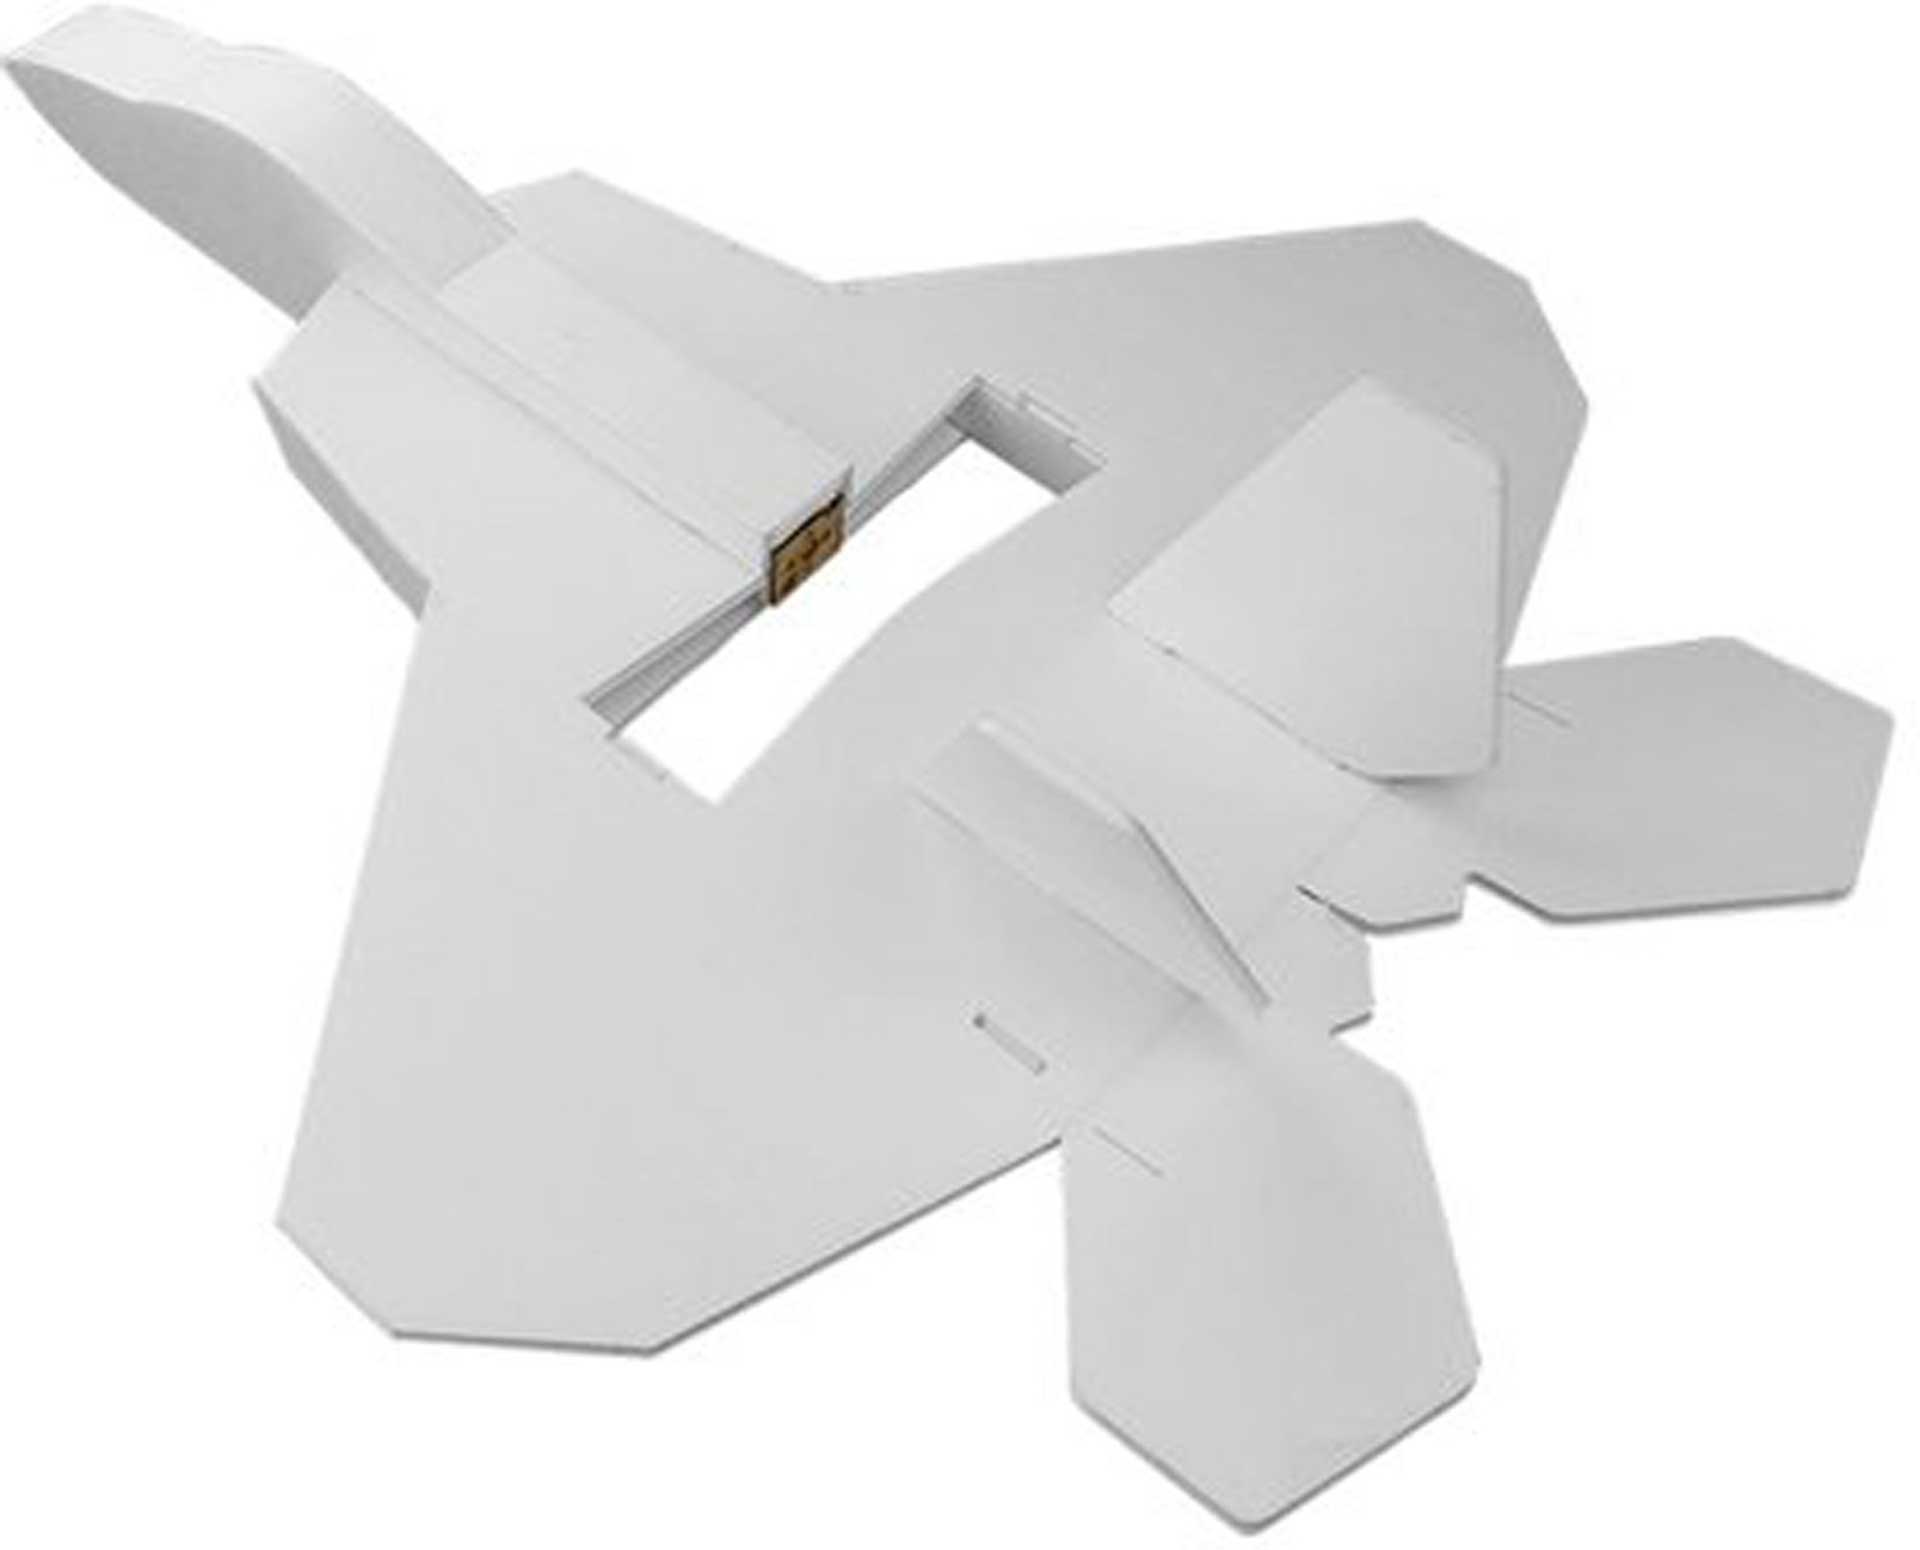 FLITE TEST Mini F-22 Raptor Kit Maker Foam